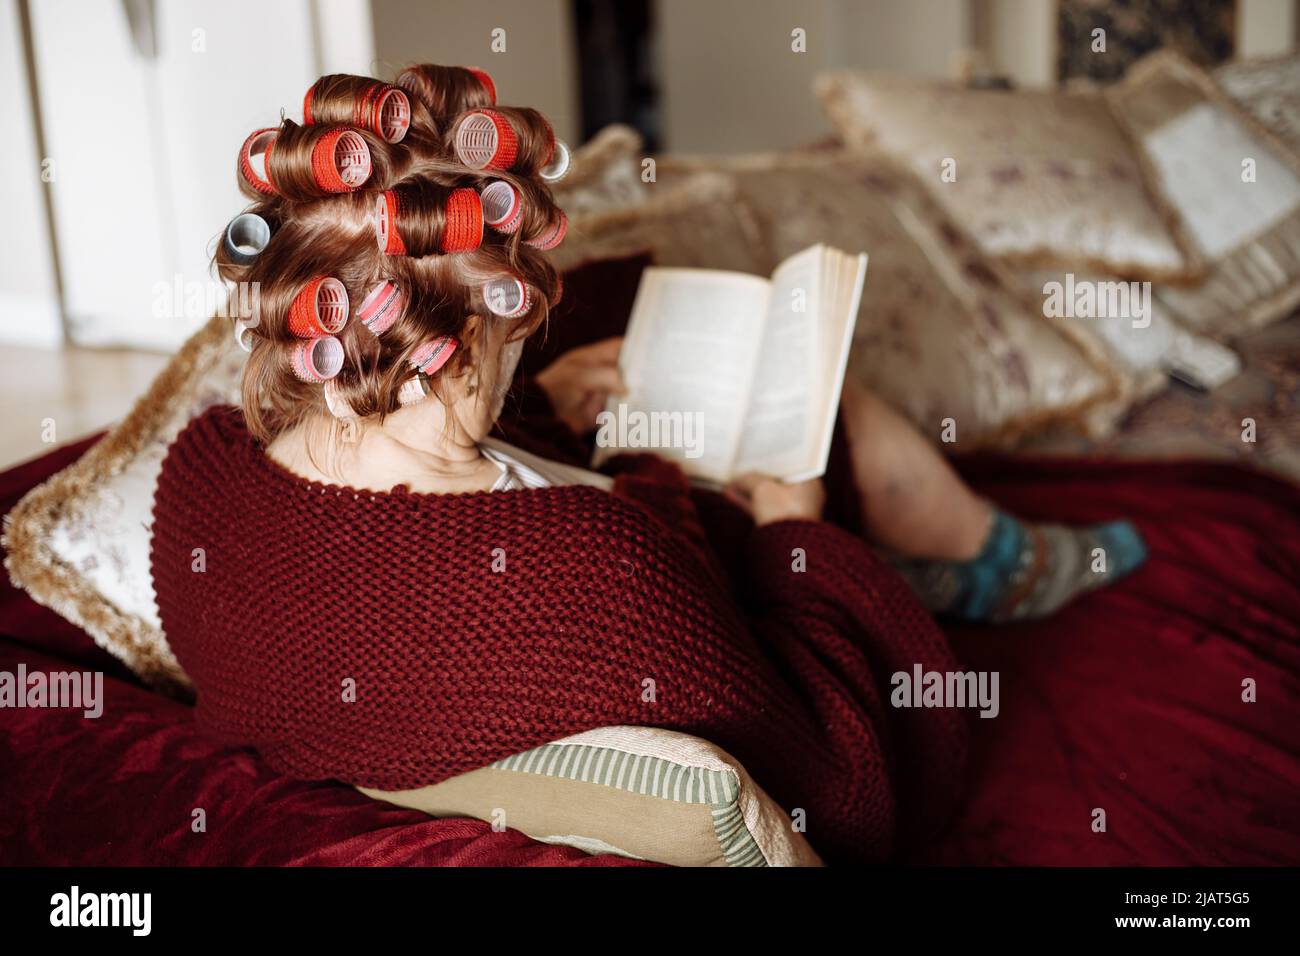 Vista posterior de la anciana aplicando coloridos cabellos-rizadores, llevando un cárdigan vinoso, sentado en el sofá, libro de lectura. Foto de stock